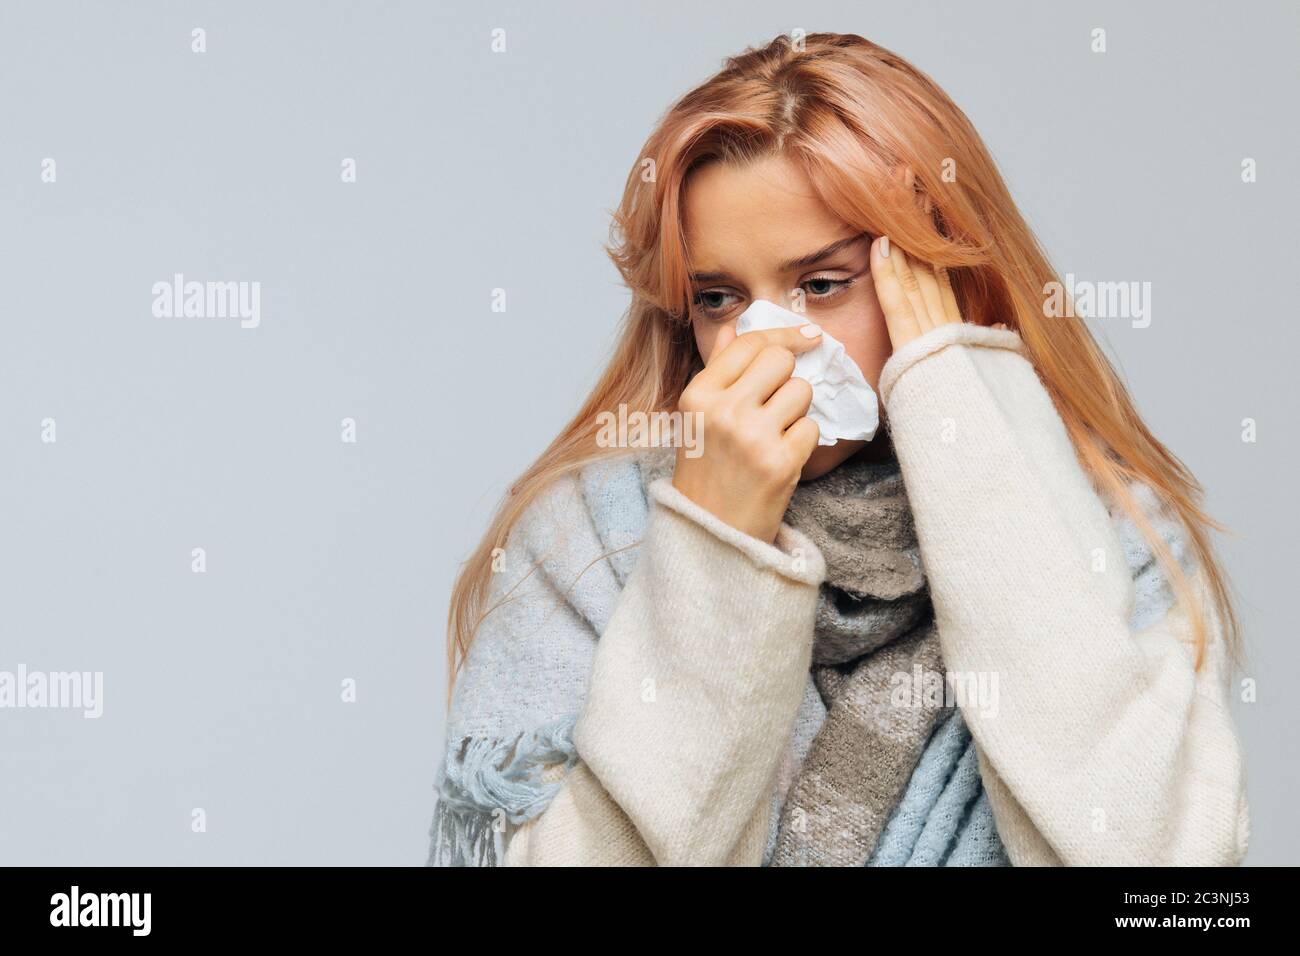 Attraktive kranke junge Frau mit Erdbeer blonden Haaren in warmen Schal mit Serviette weht Nase gewickelt, fühlt sich schlecht, Kopfschmerzen, berühren ihre Stirn Stockfoto